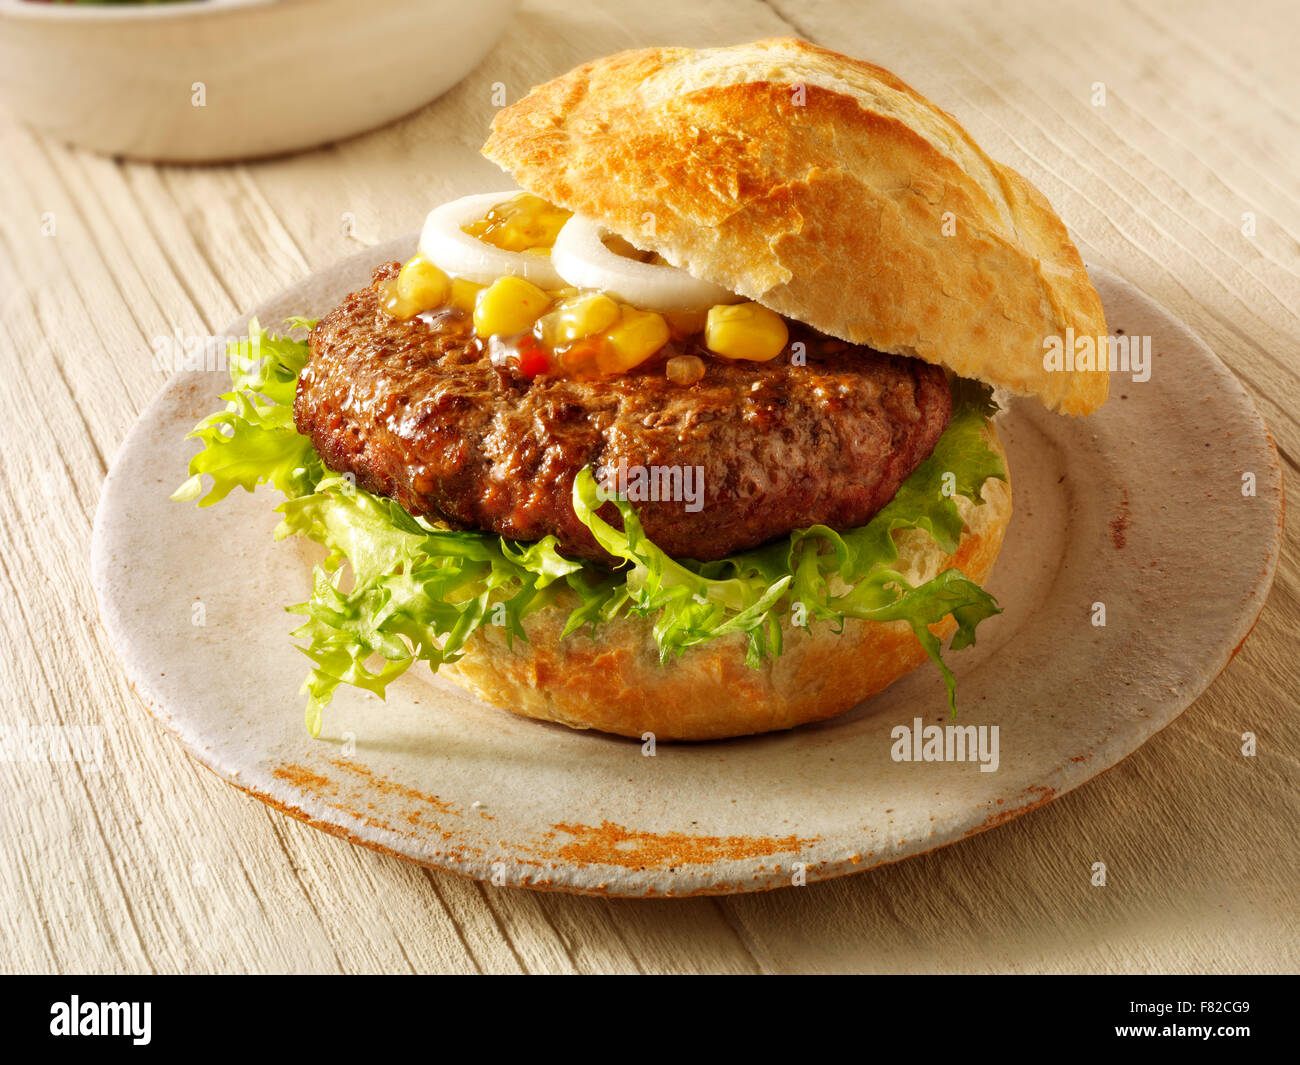 In prossimità di un hamburger di manzo, hambuger in un bianco rotolo croccante con granturco dolce assaporare e cipolla e lattuga Foto Stock